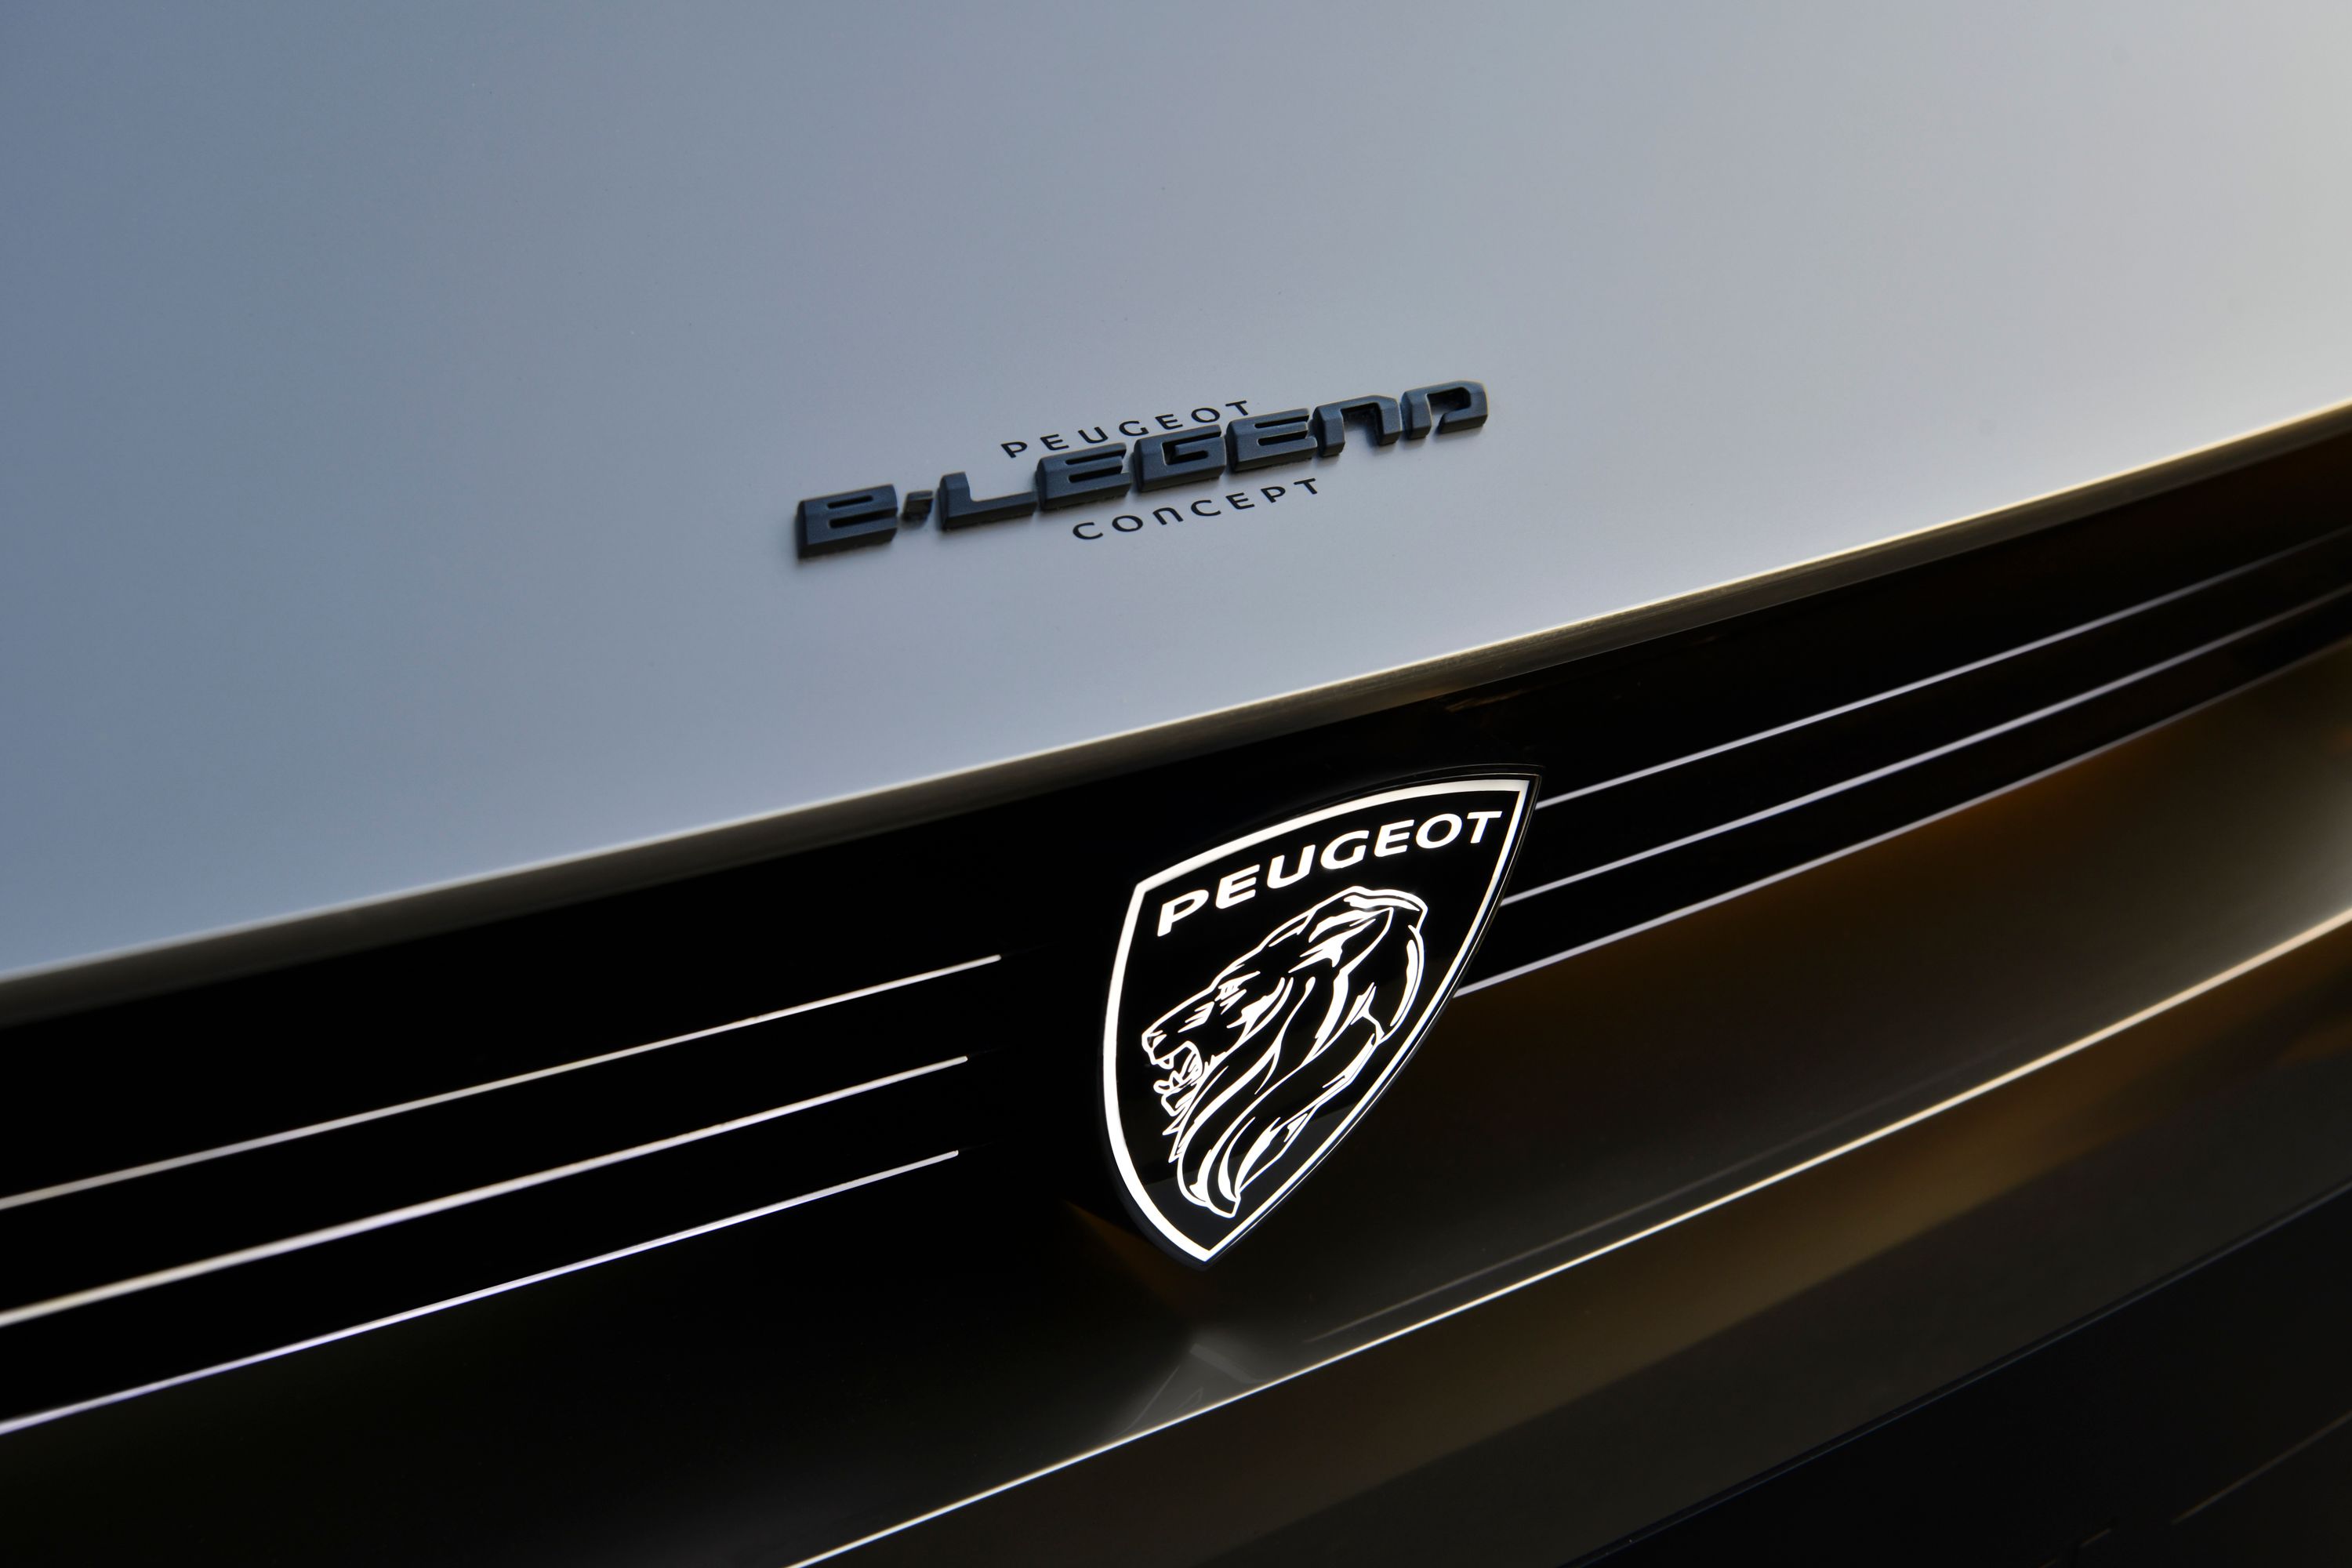 2018 Peugeot e-Legend Concept